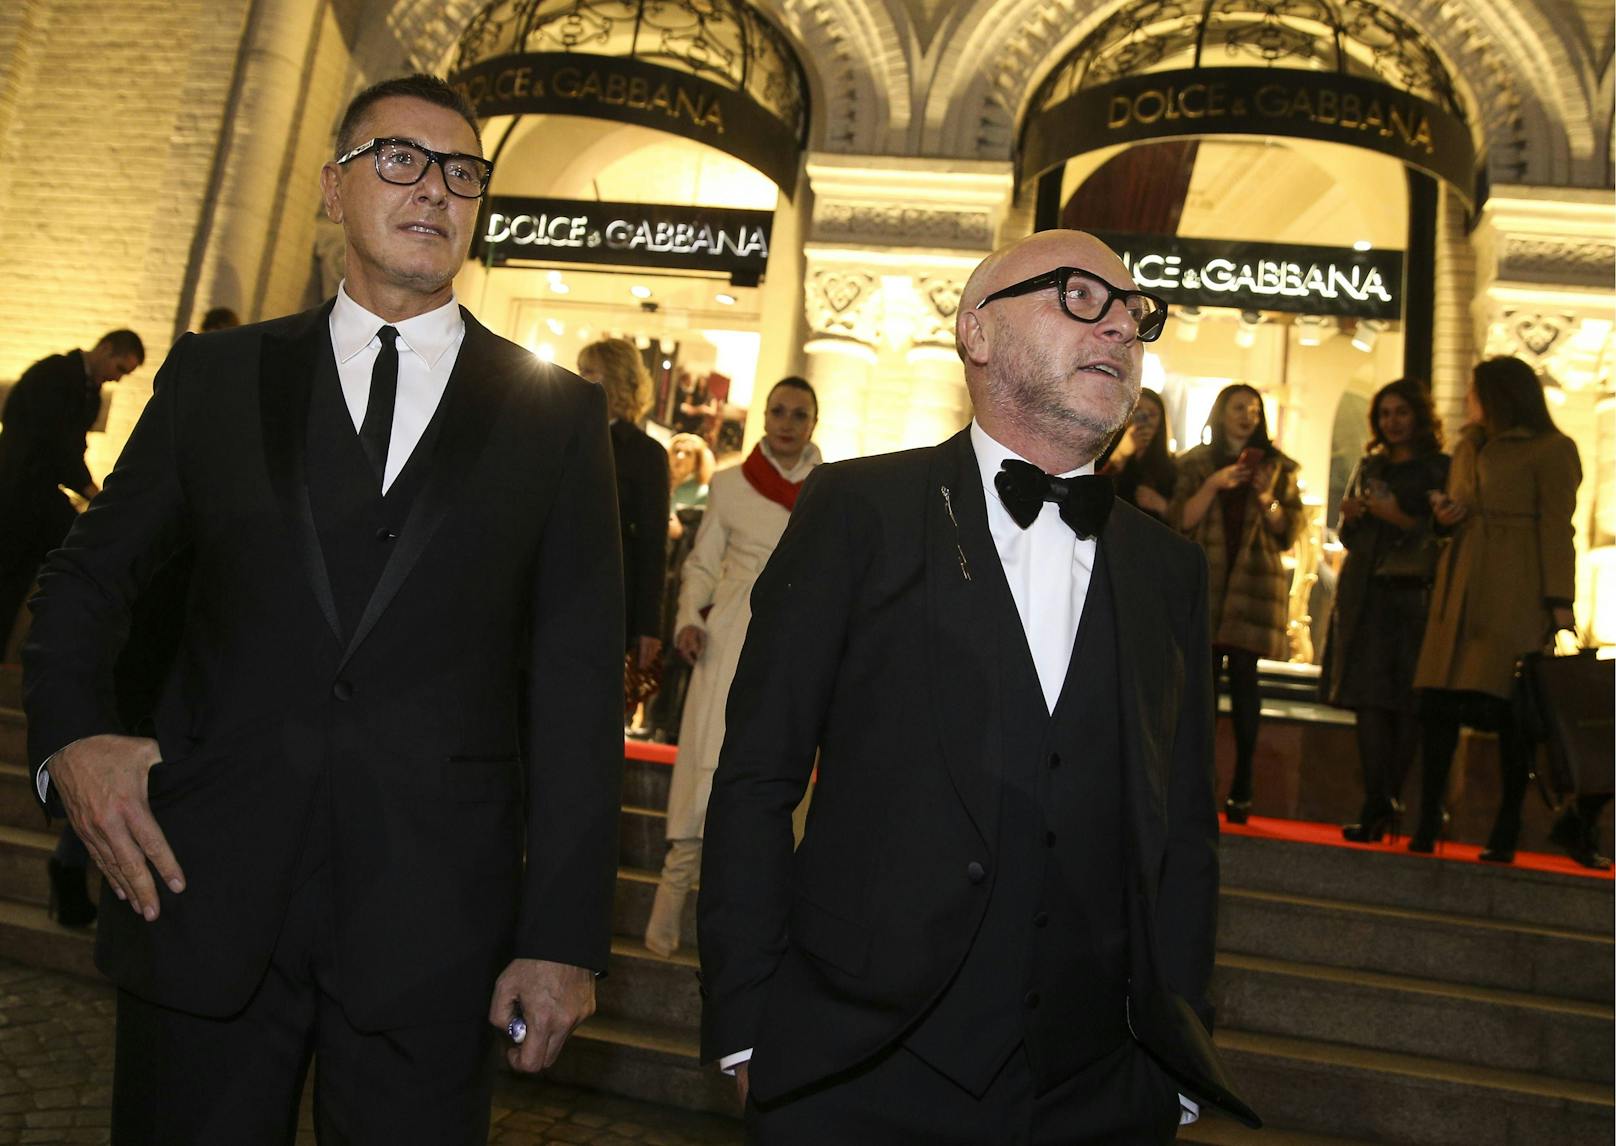 Domenico Dolce (rechts) und Stefano Gabbana hängt ihr Rassismus-Debakel noch nach. Vergessen machen wollen sie es anscheinend nicht.